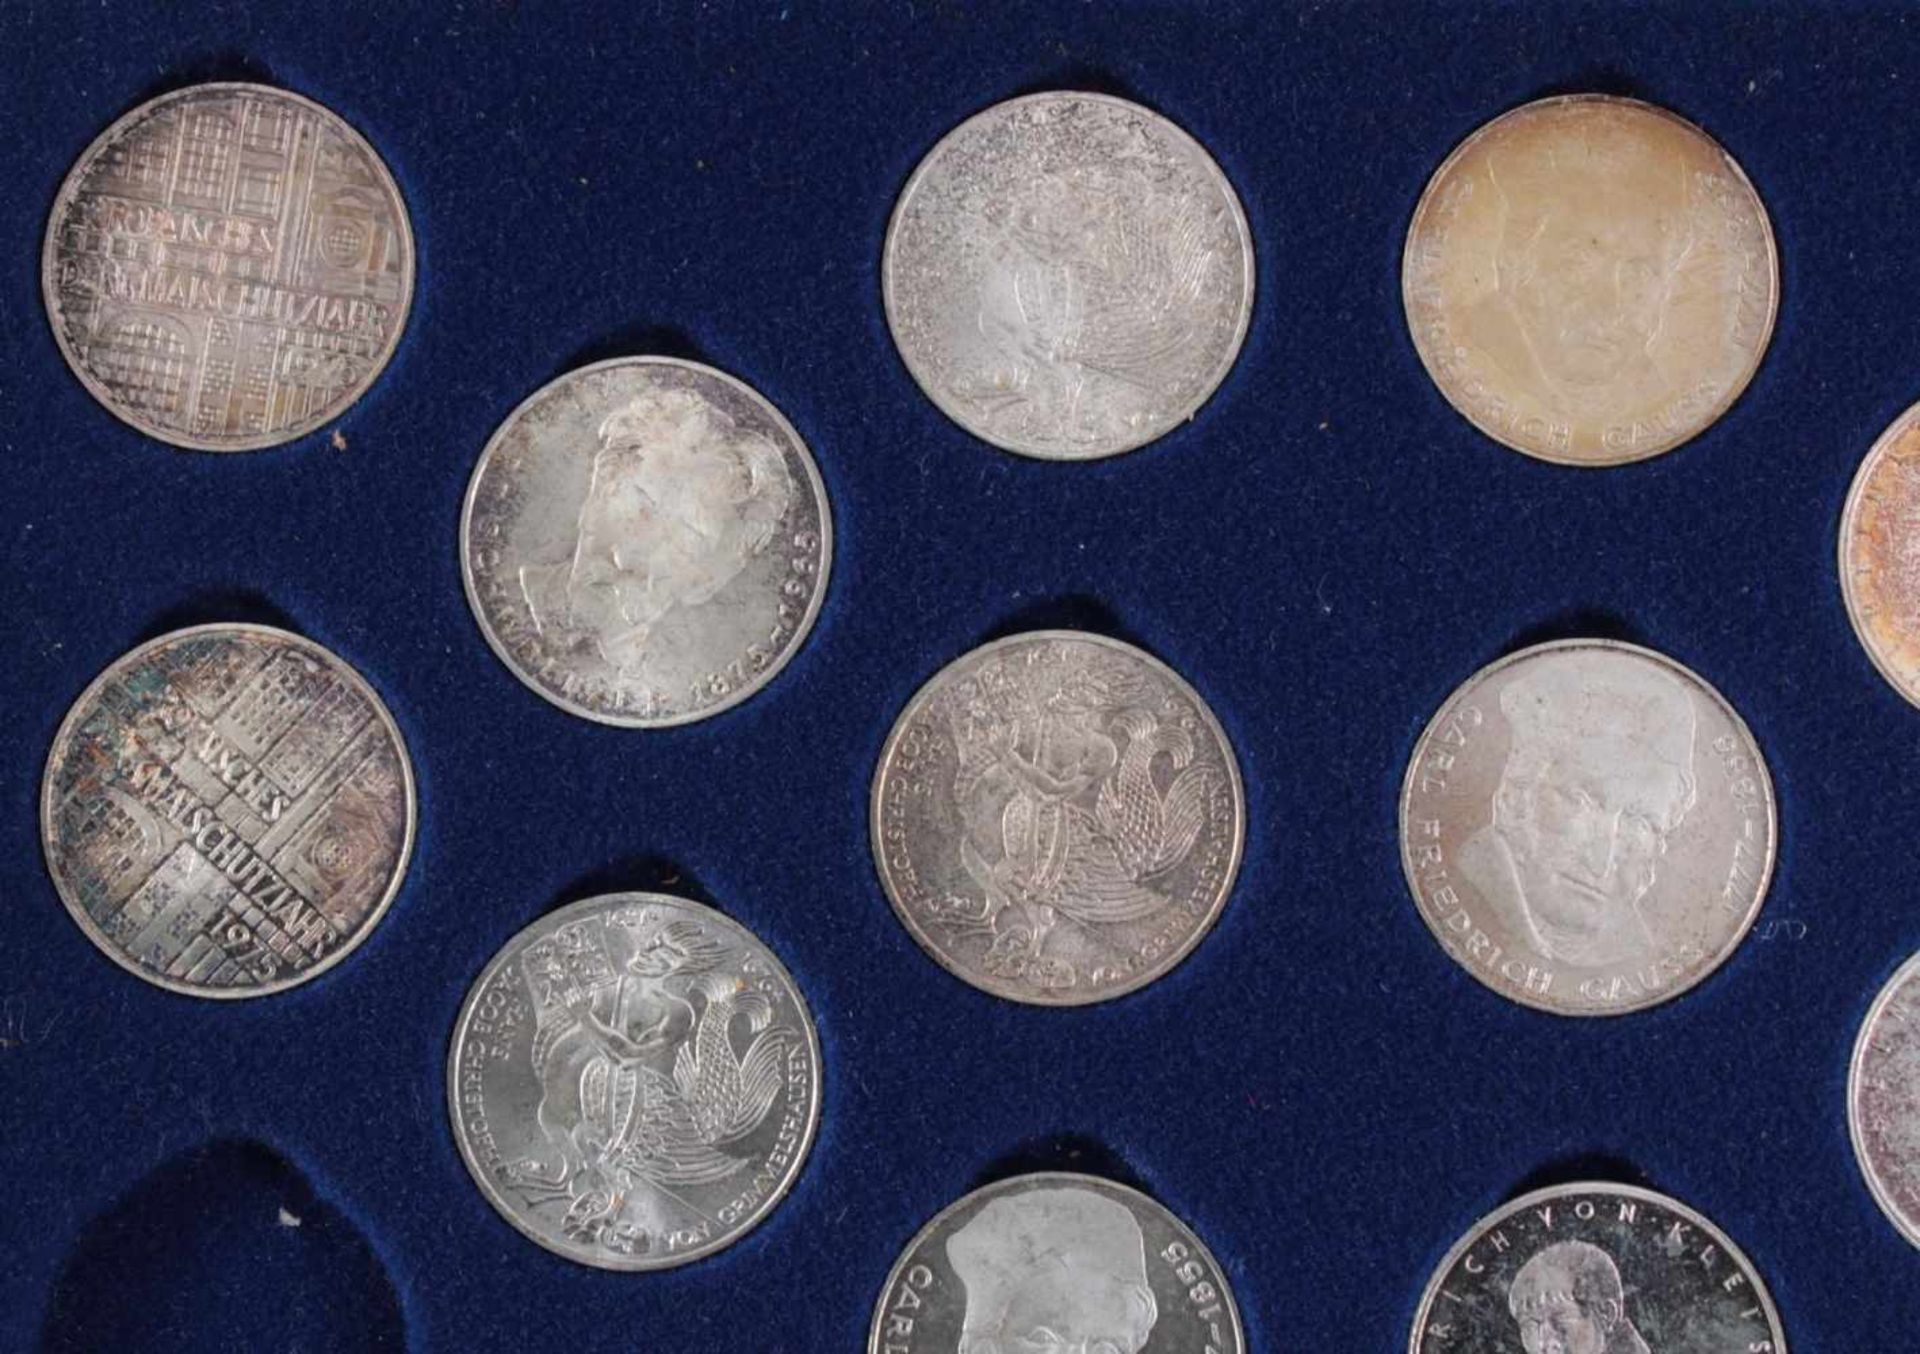 5 DM Sammlung Gedenkmünzen von 1951 bis 197470 Münzen in original Sammelbox - Bild 2 aus 7